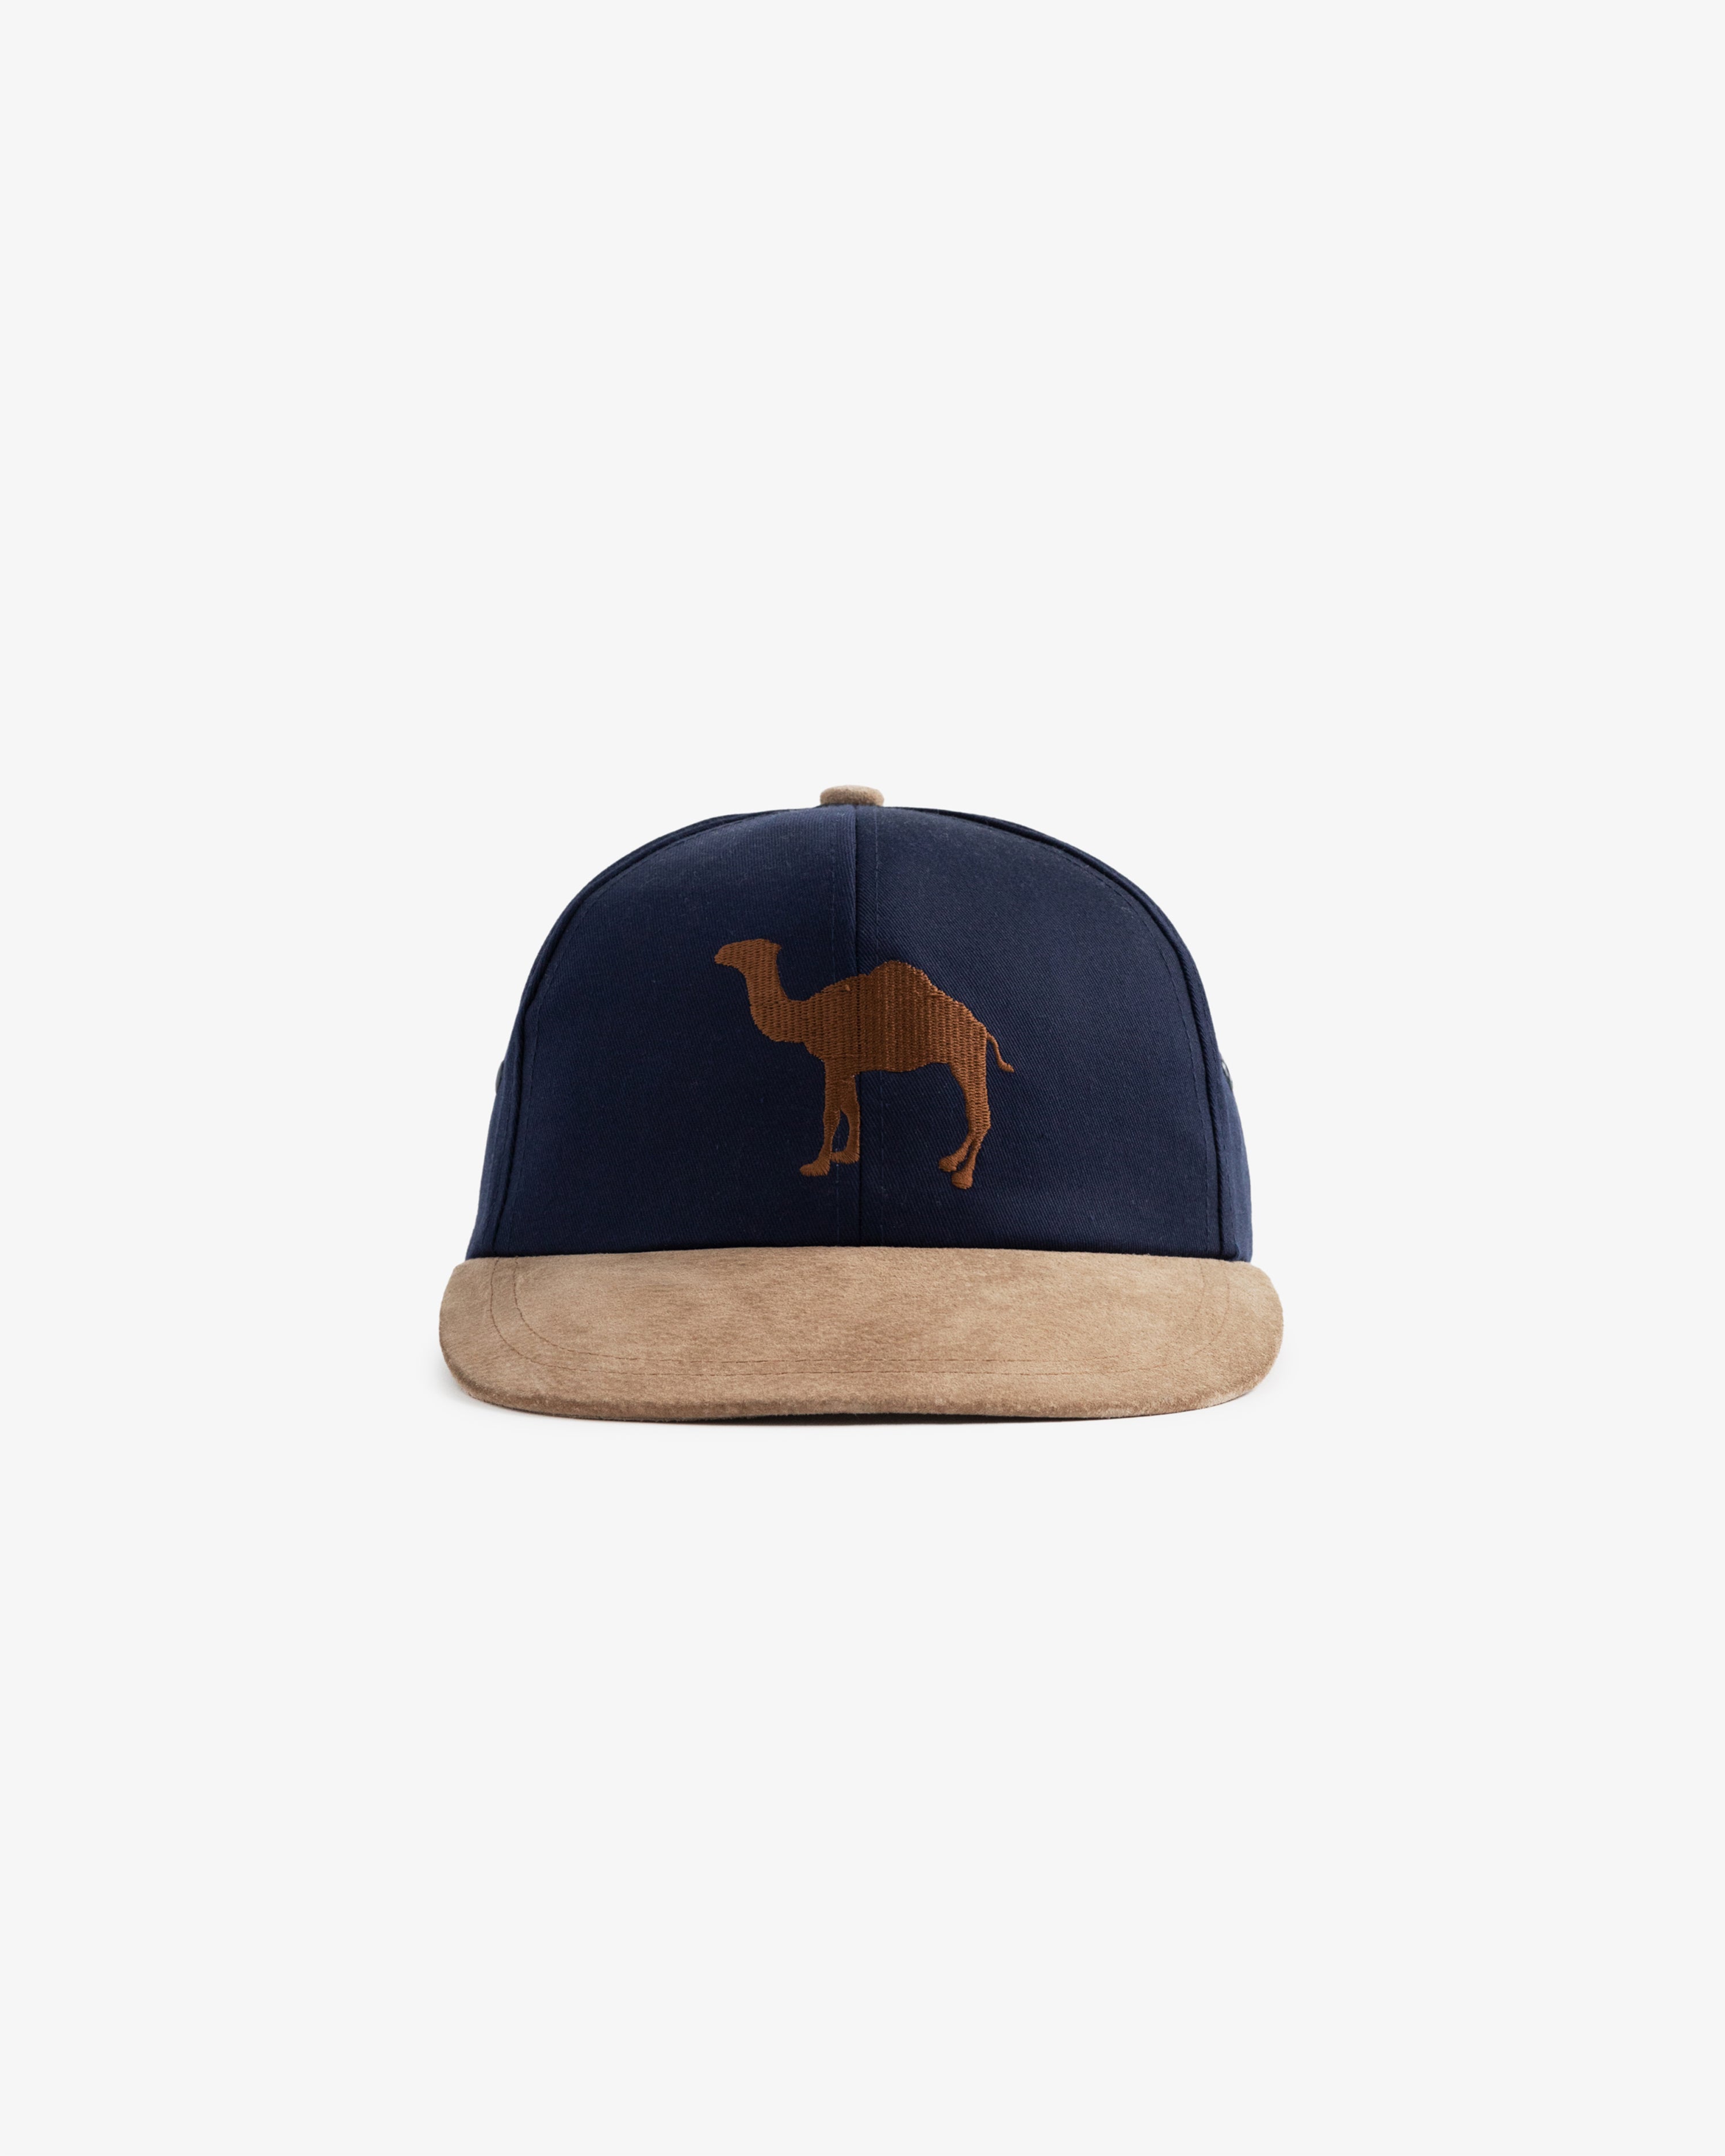 Vintage Camel Hat